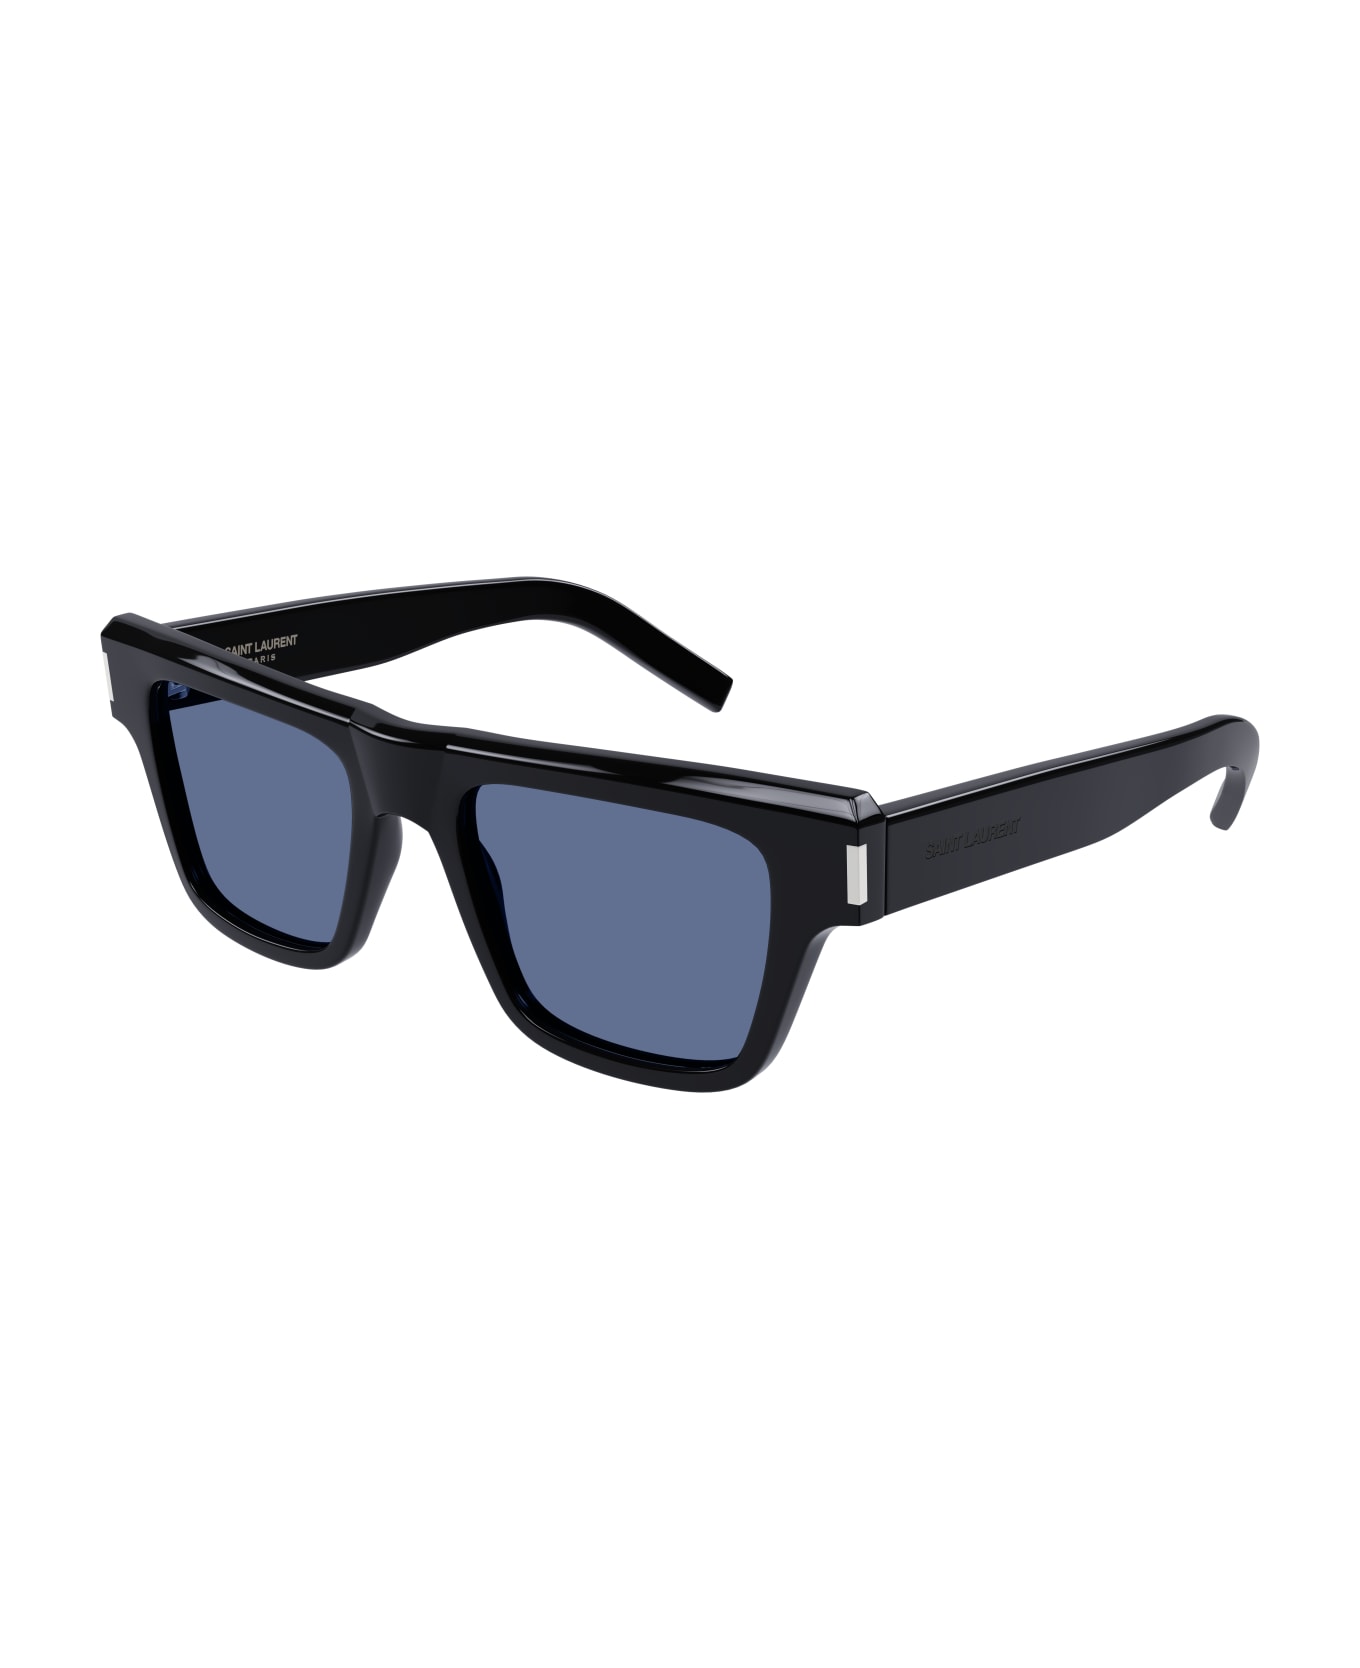 Saint Laurent Eyewear SL 469 Sunglasses - Black Black Blue